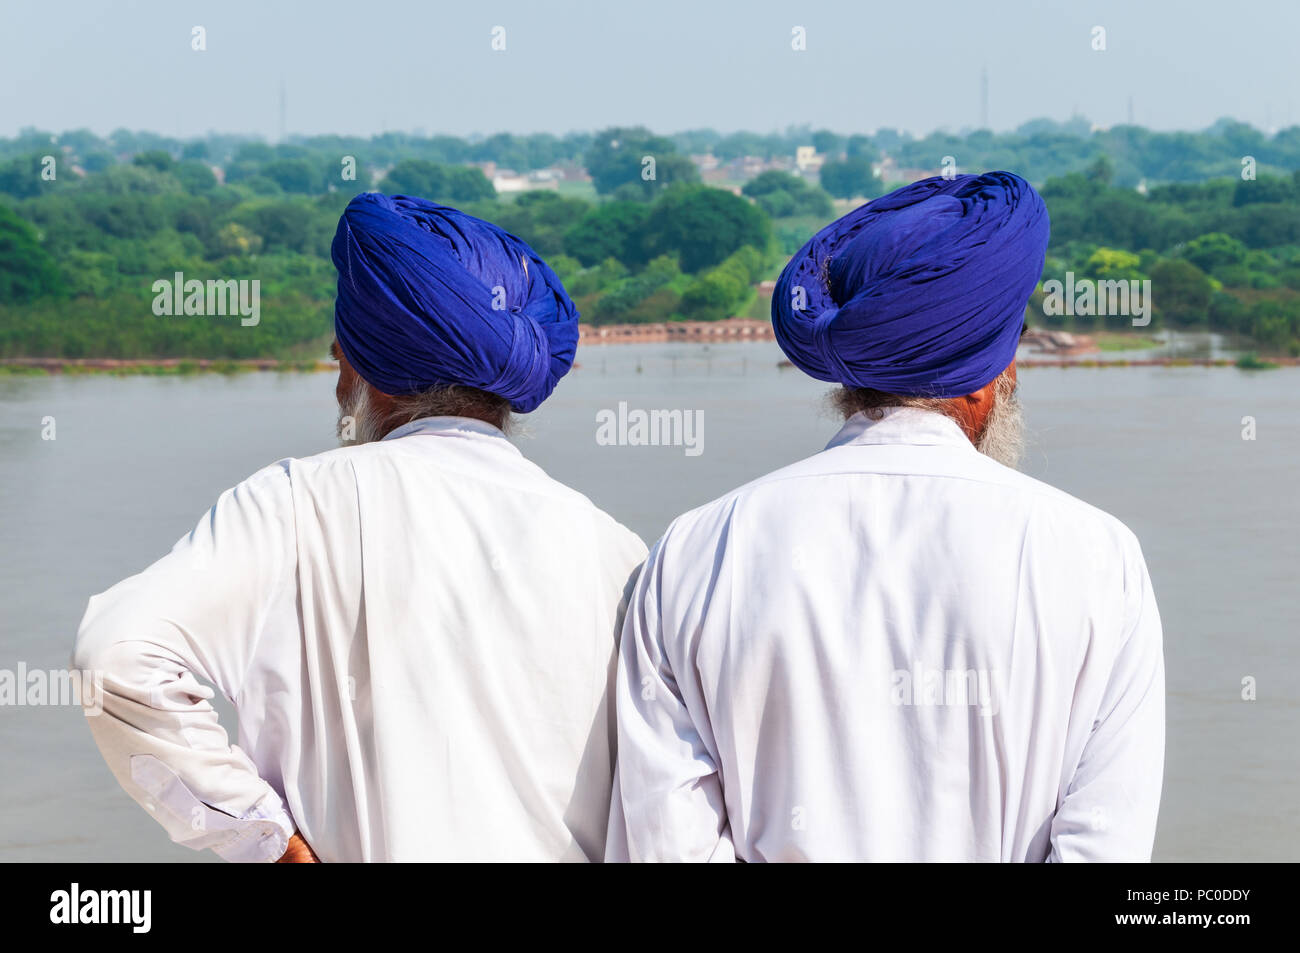 Vista desde detrás de dos sijs indios hombres vestidos de azul idéntico turbantes y mirando en direcciones opuestas lejos del Taj Mahal en Agra, India Foto de stock